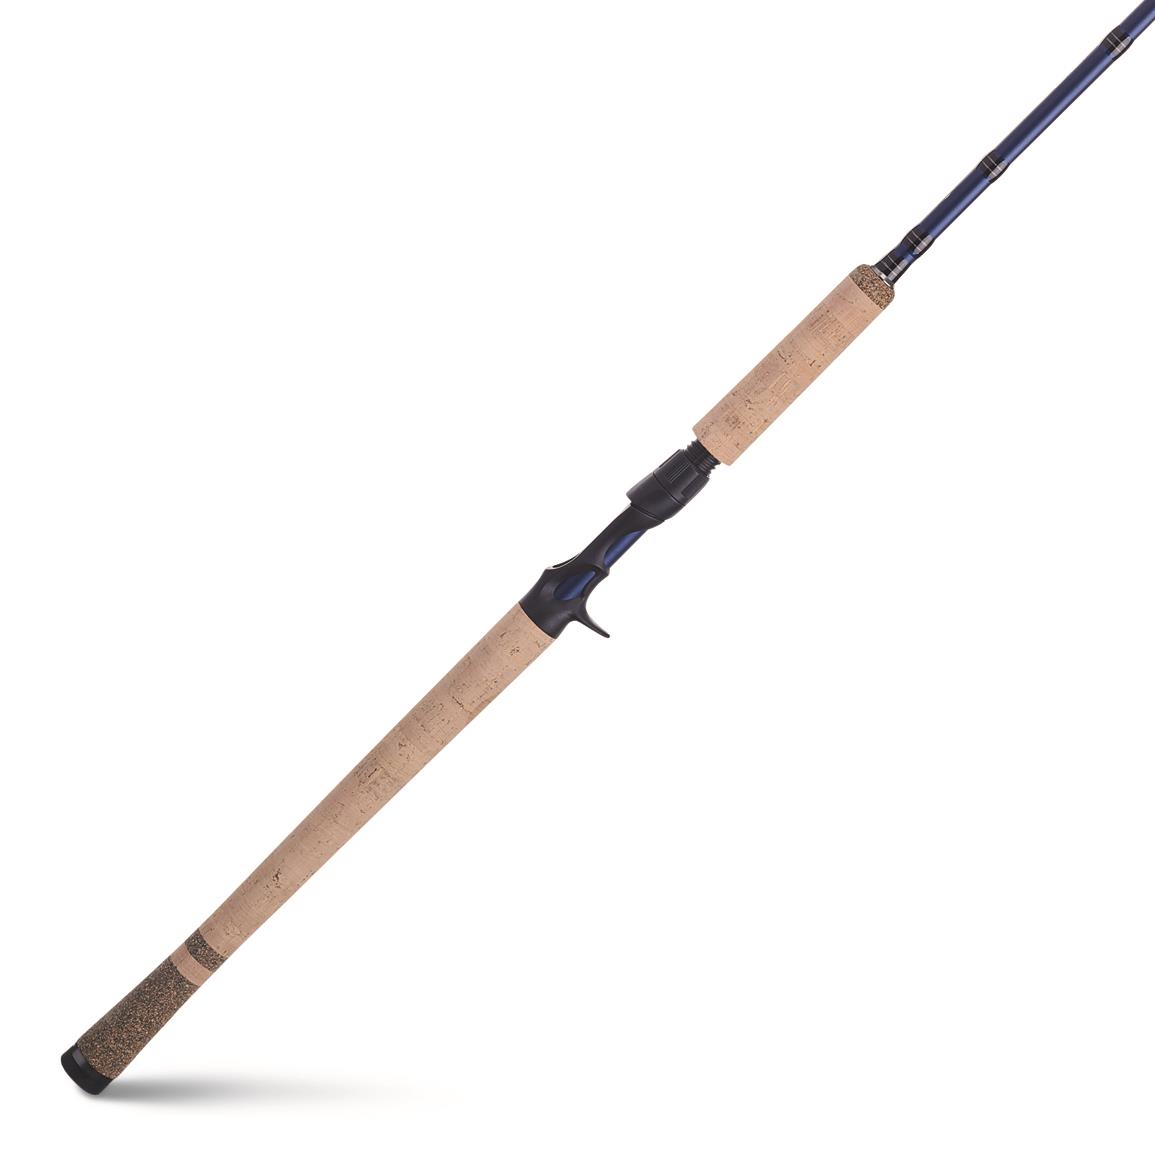 Fenwick Eagle Series Salmon/Steelhead Casting Rod